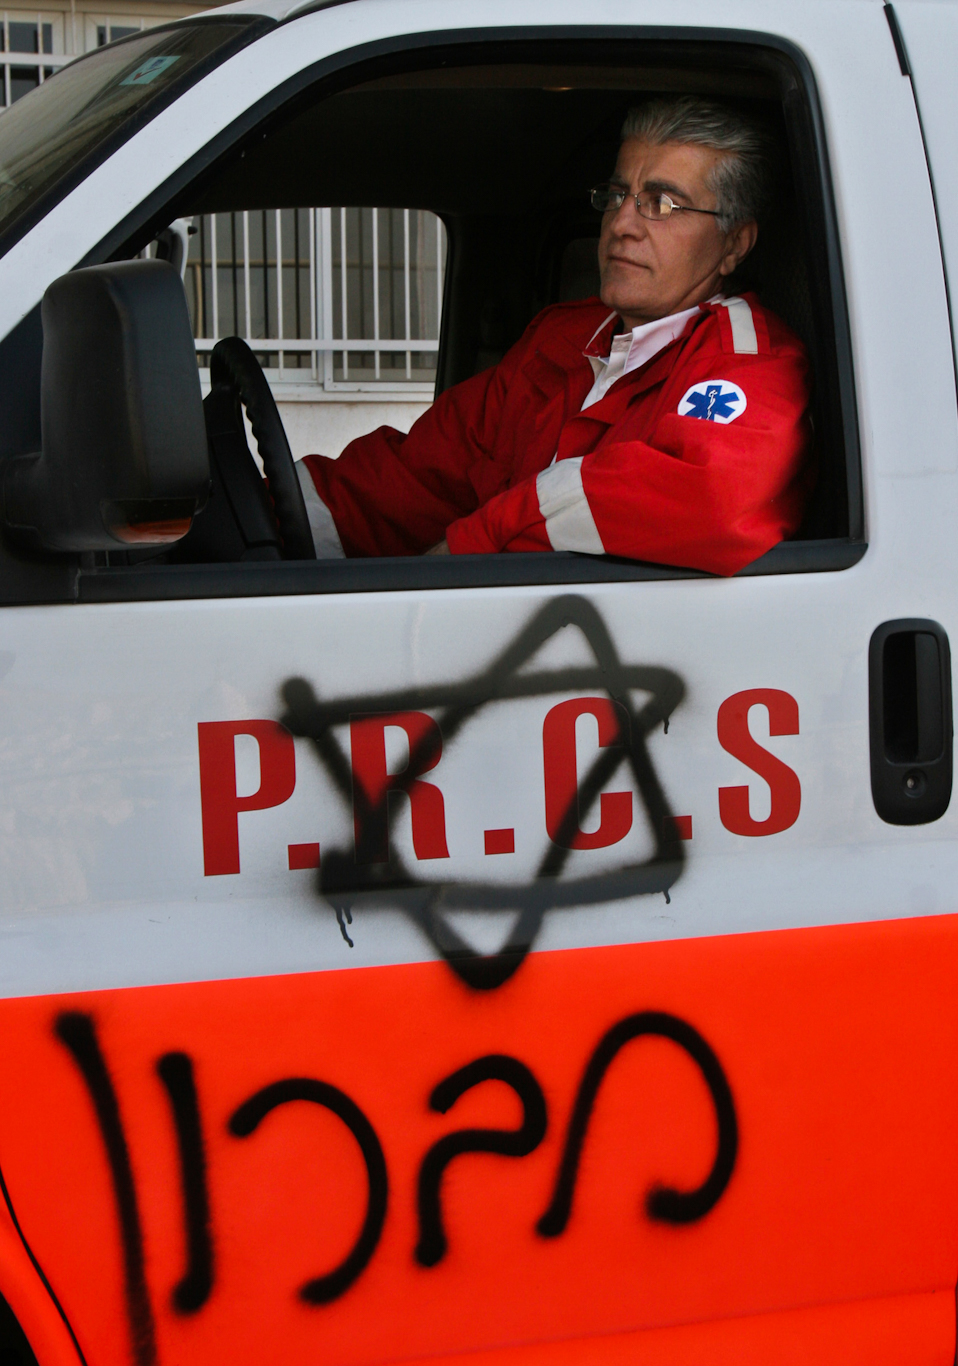 Palestinian ambulance 